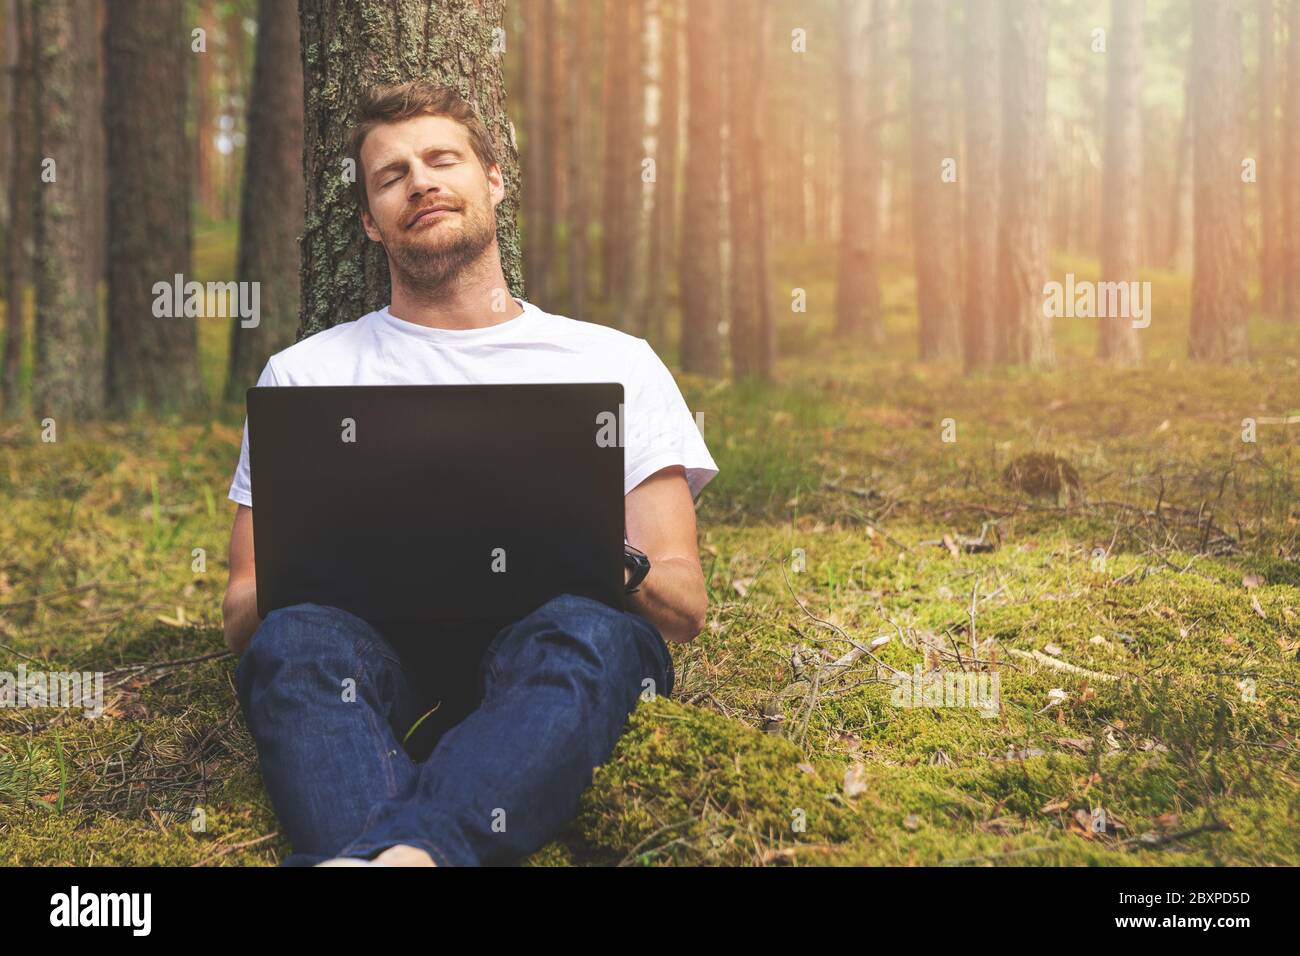 travail à distance dans la nature - homme avec un ordinateur portable se relaxant dans les bois Banque D'Images